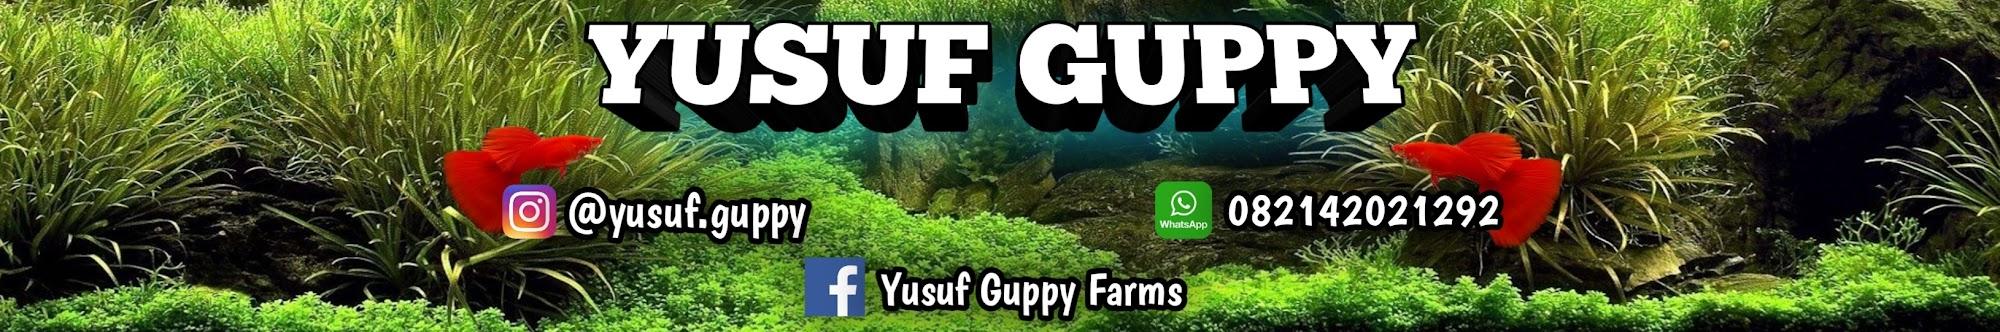 Yusuf Guppy